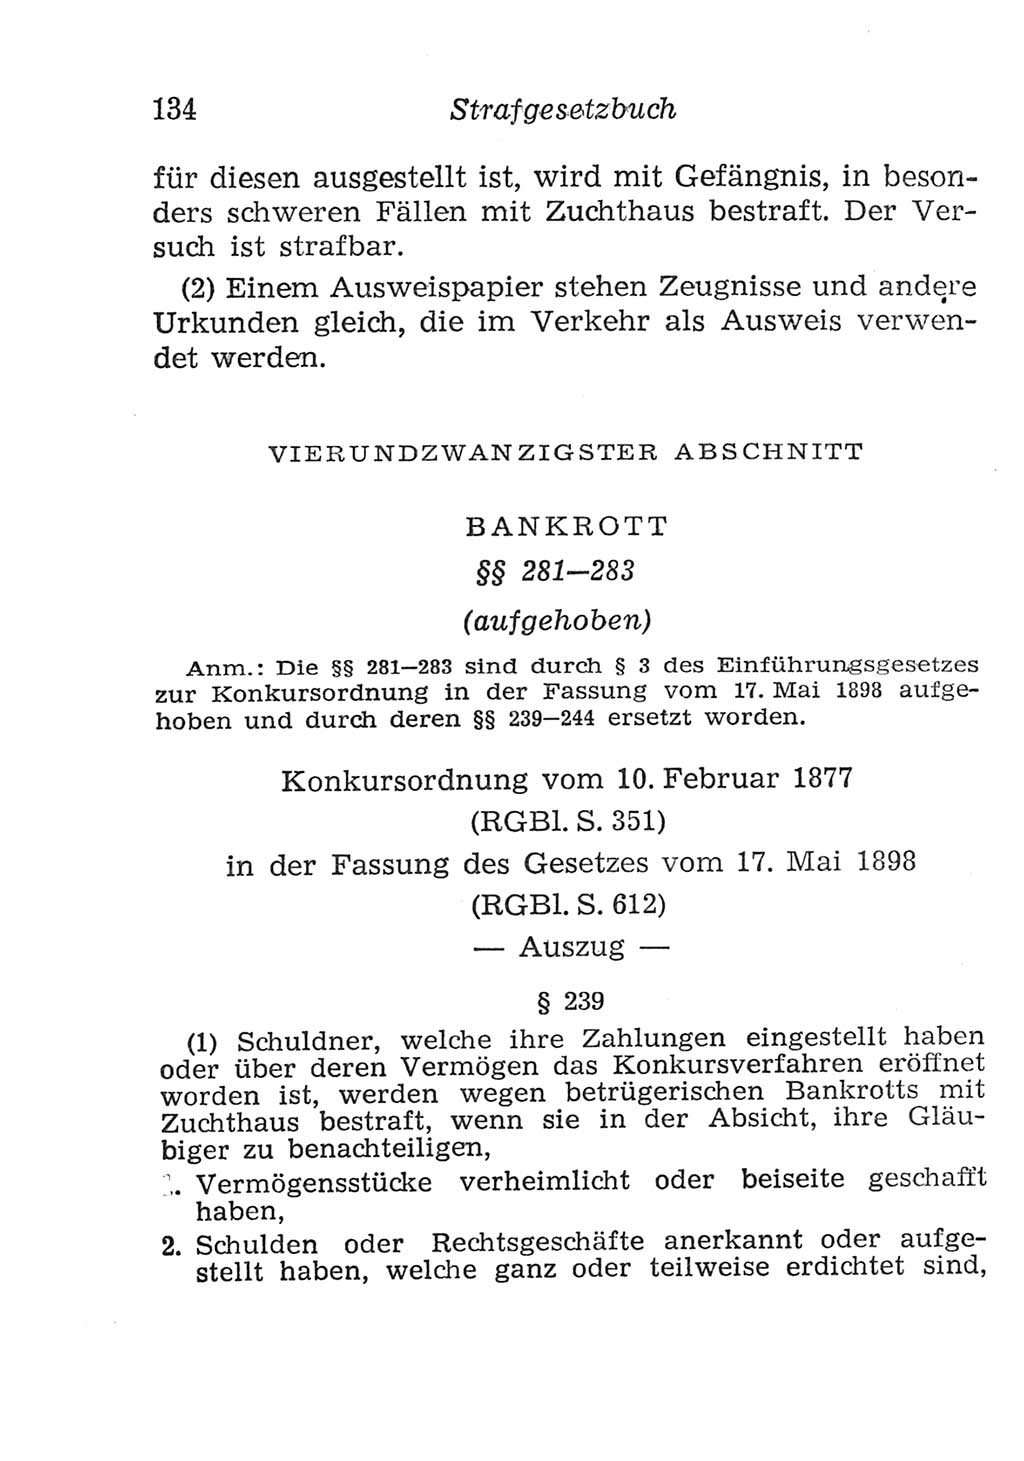 Strafgesetzbuch (StGB) und andere Strafgesetze [Deutsche Demokratische Republik (DDR)] 1957, Seite 134 (StGB Strafges. DDR 1957, S. 134)